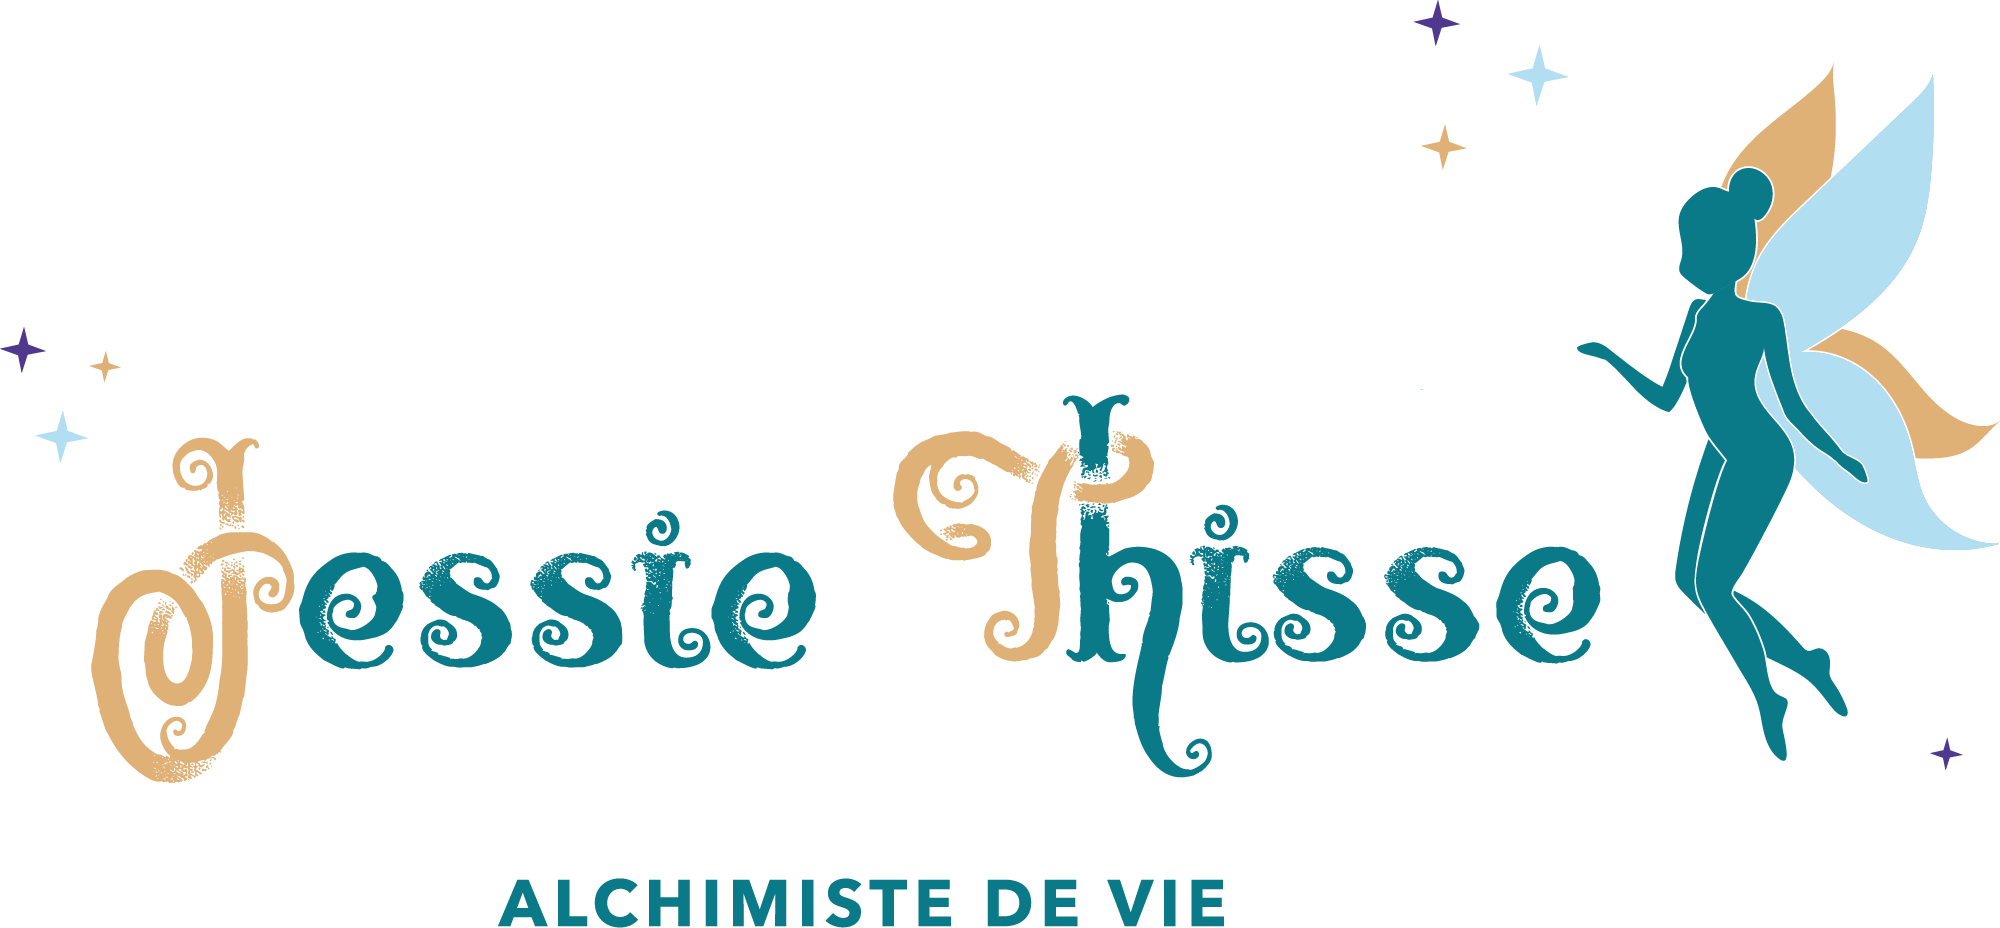 logo manuscrit "jessie tisse" avec petite fée sur le coté en couleur.